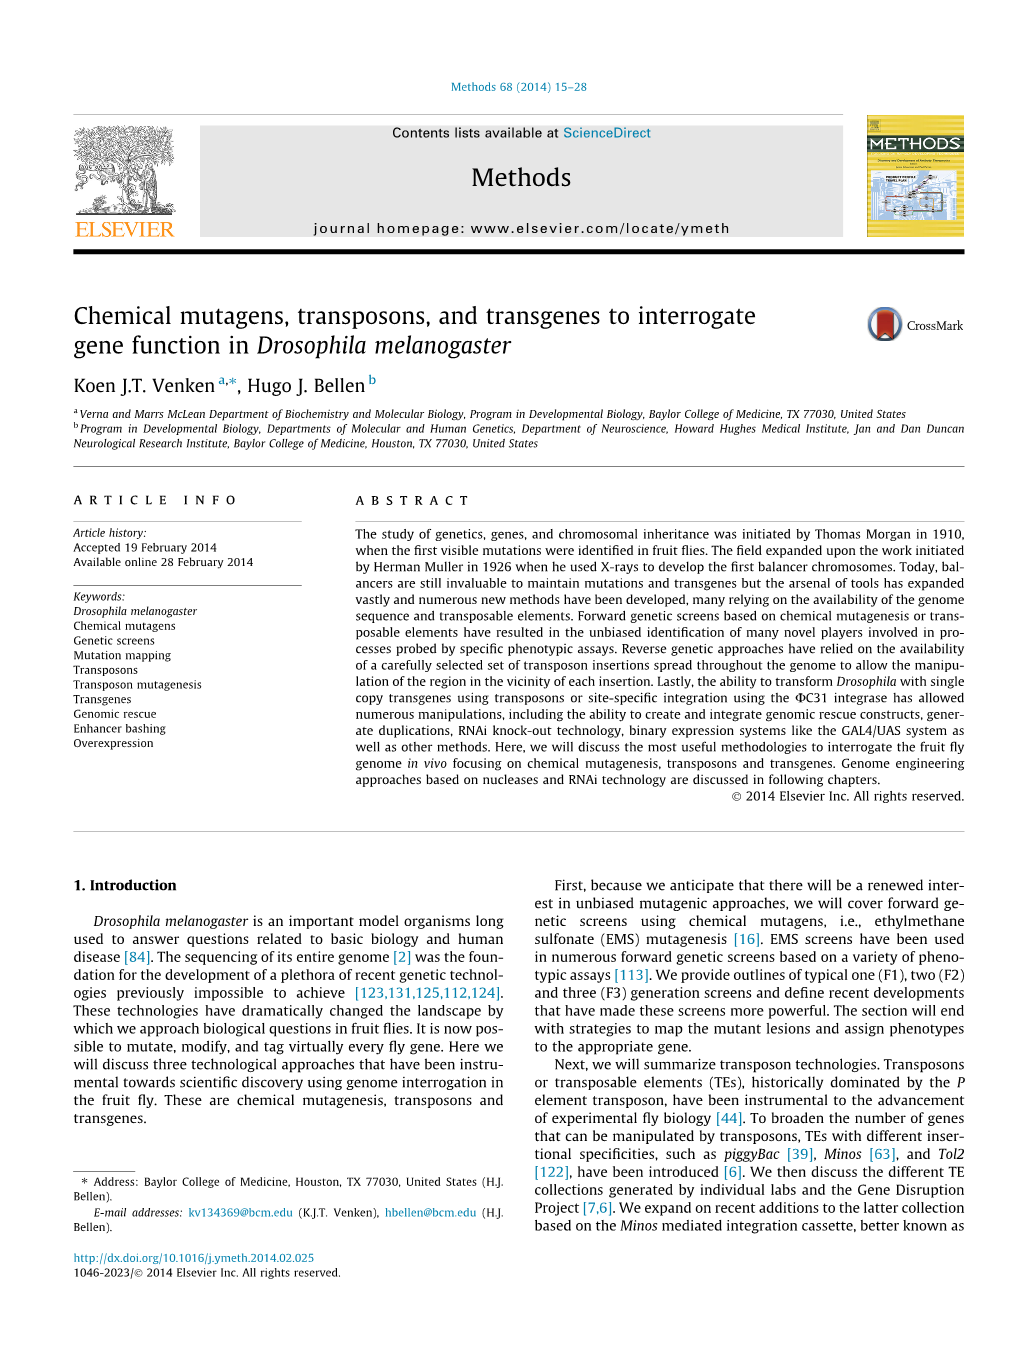 Chemical Mutagens, Transposons, and Transgenes to Interrogate Gene Function in Drosophila Melanogaster ⇑ Koen J.T